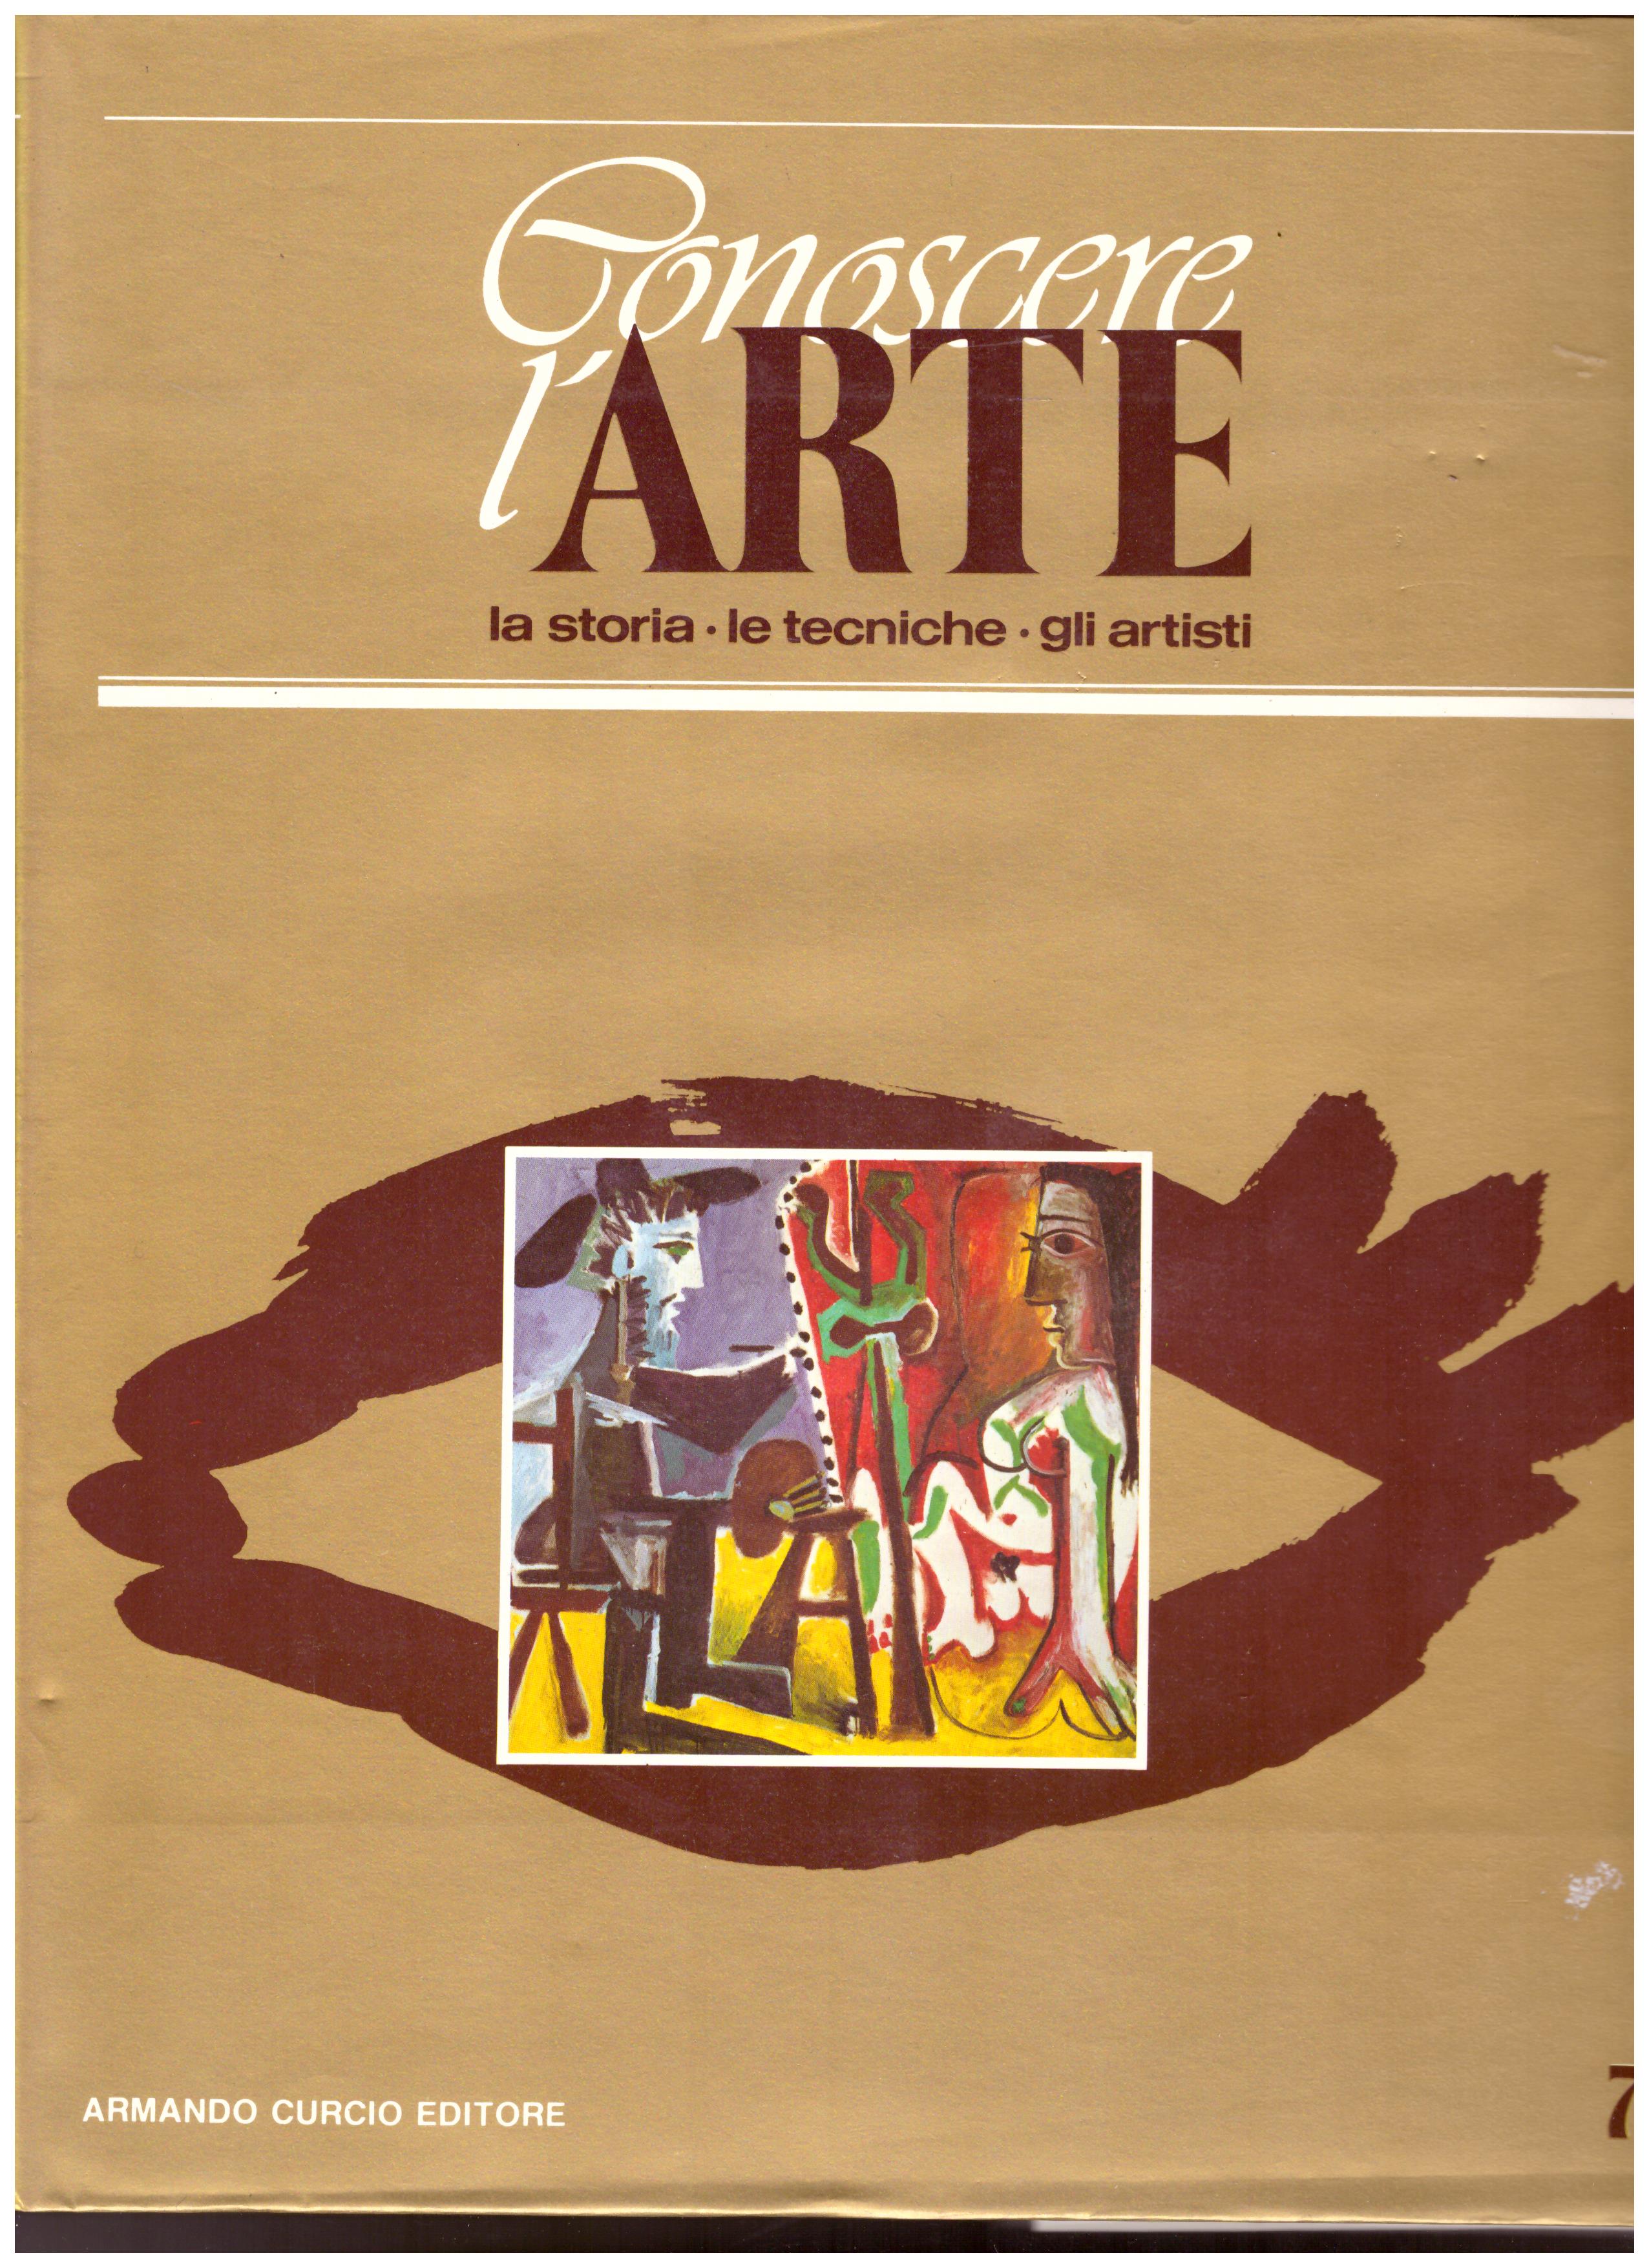 Titolo: Conoscere l'arte n.7  Autore: AA.VV.  Editore: Armando Curcio editore 1986